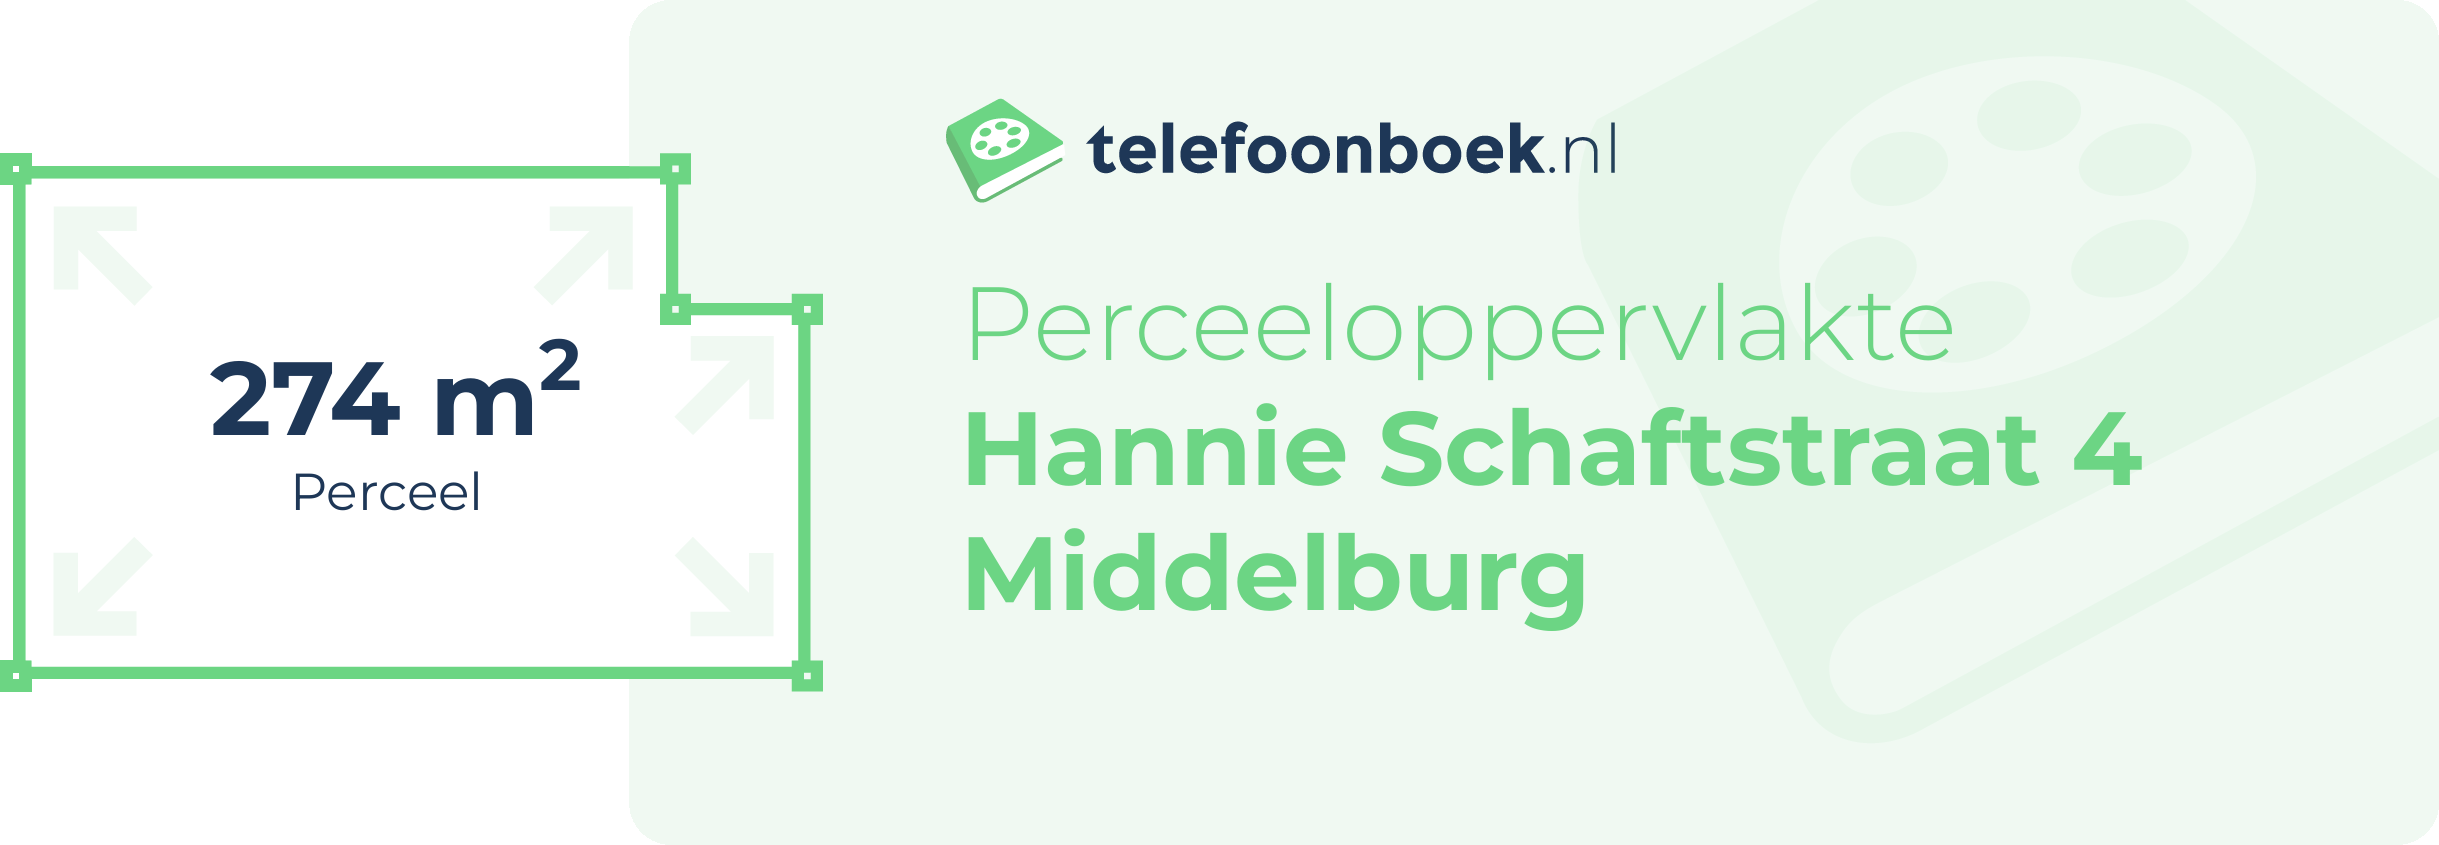 Perceeloppervlakte Hannie Schaftstraat 4 Middelburg